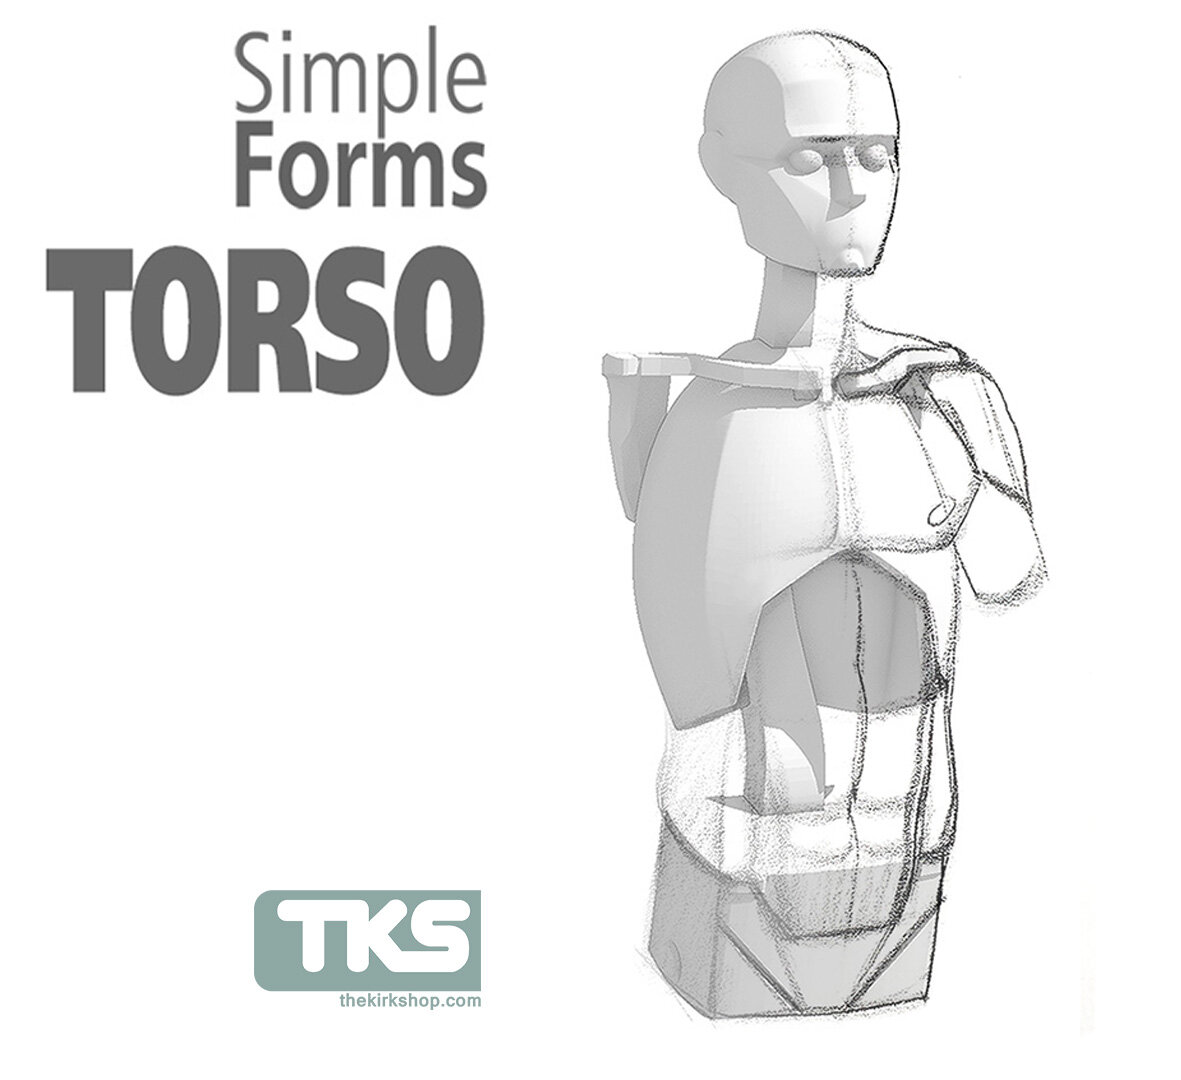 simple forms torso.jpg